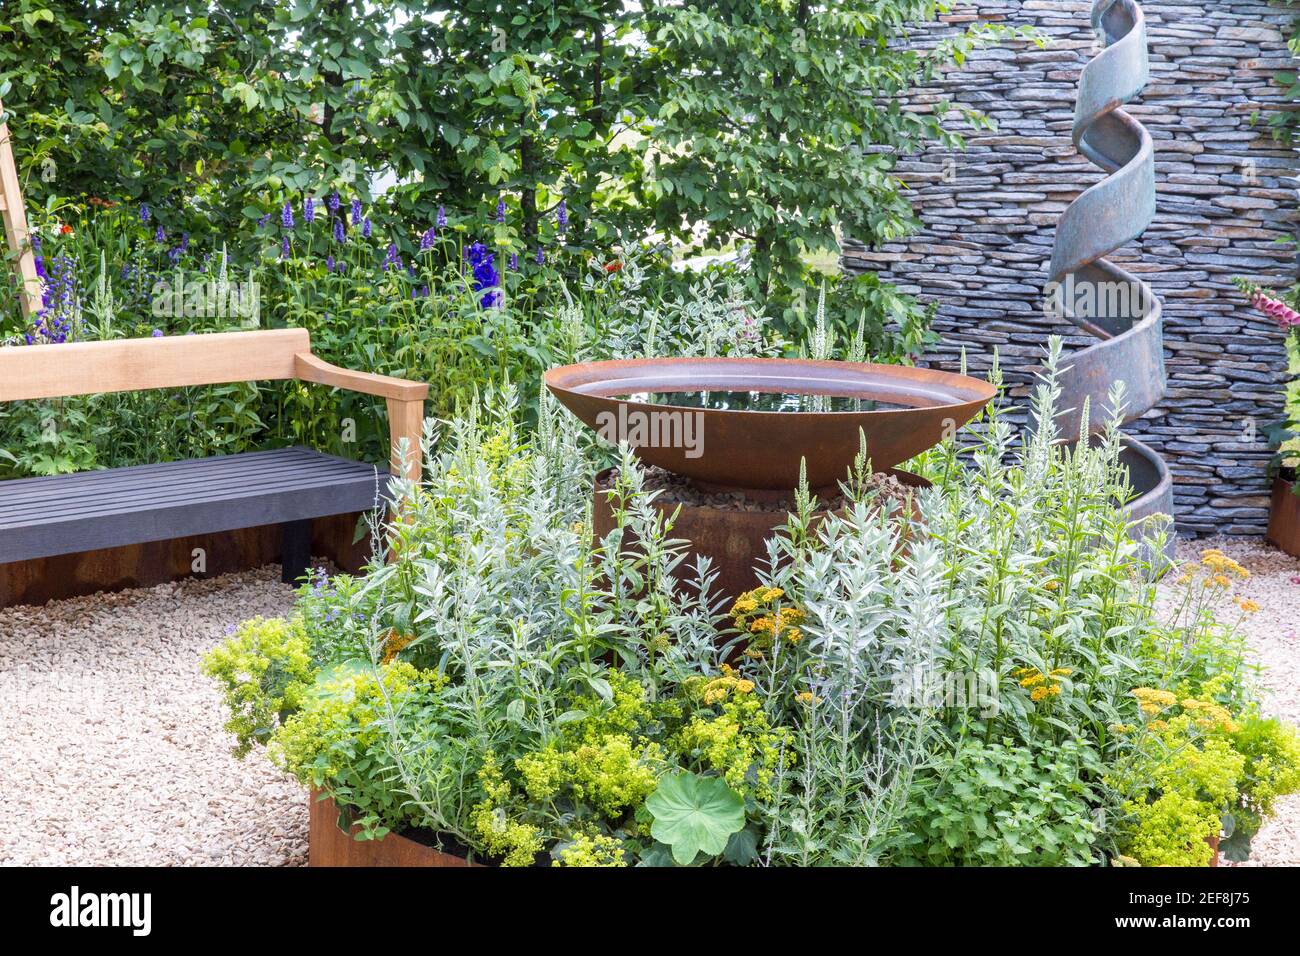 Kleiner englischer Hofgarten mit Spiralskulptur - Kortenstahl Wasserspiel - Hecken - Schotterweg mit Gartenbank Flower Borders England Großbritannien Stockfoto